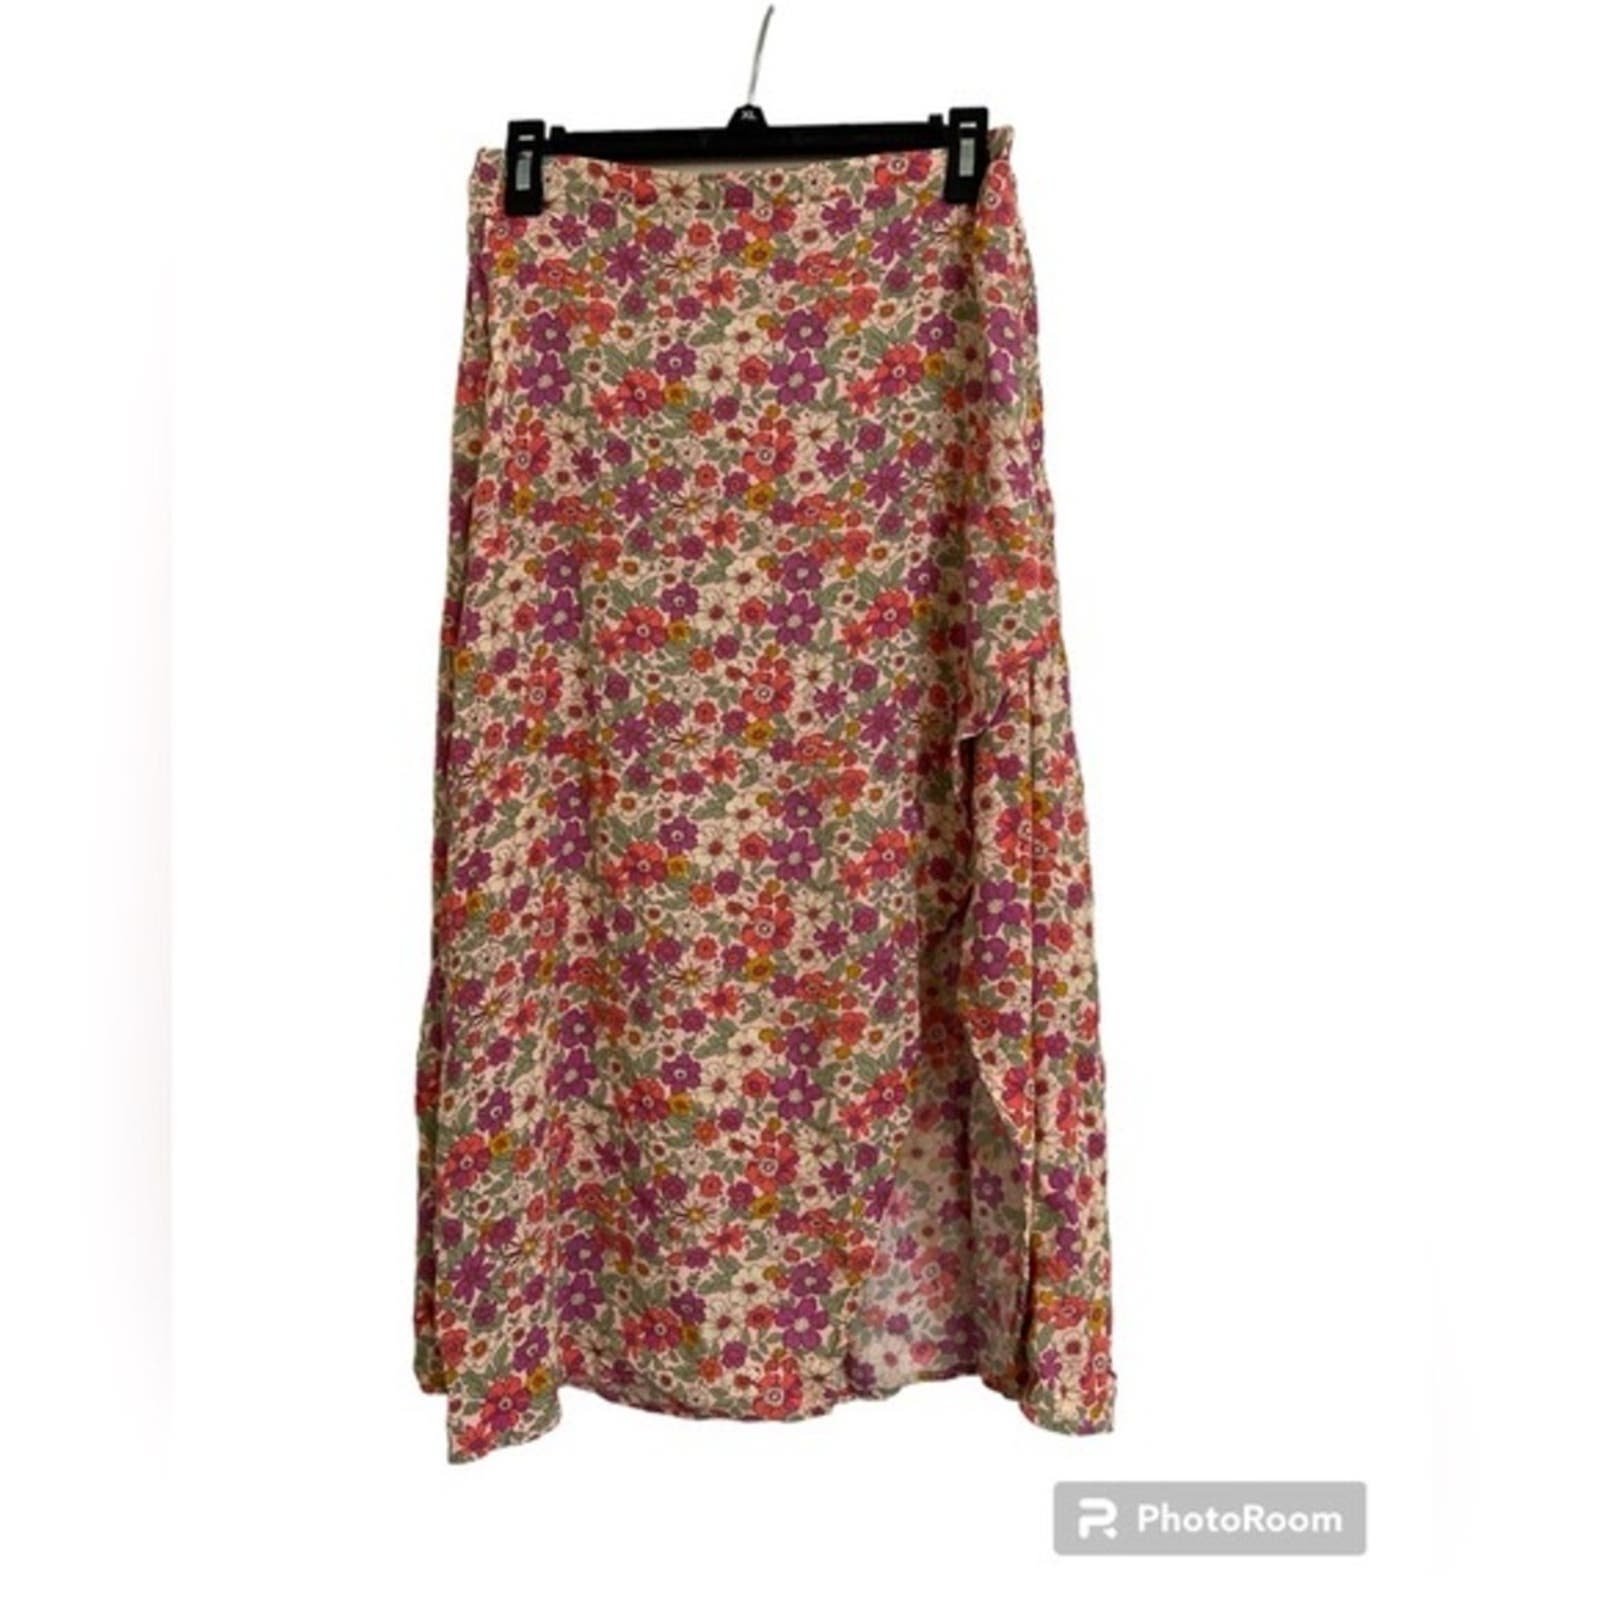 Elegant Rewind Floral Ditsy Midi Skirt Size L kq17OqRoK Cheap